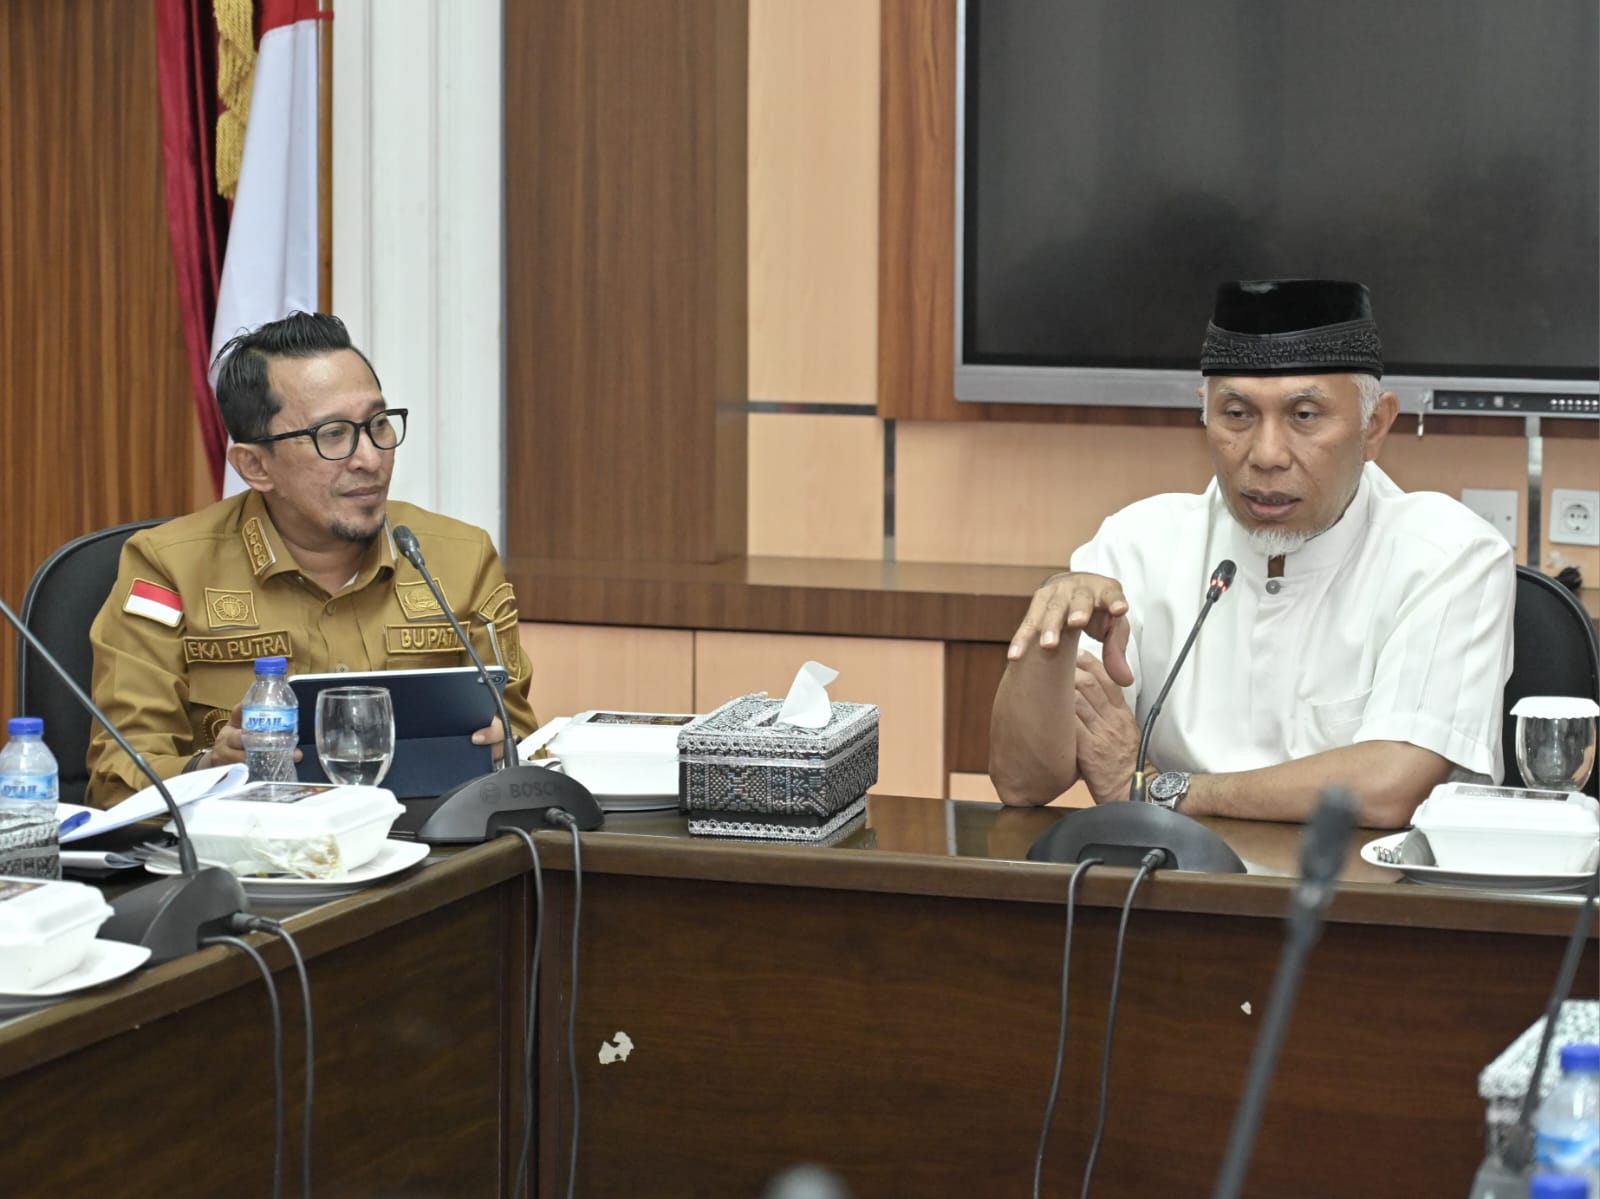 Gubernur Sumbar Mahyeldi (kanan) dan Bupati Tanah Datar Eka Putra dalam rapat di Padang. Foto Adpsb. 